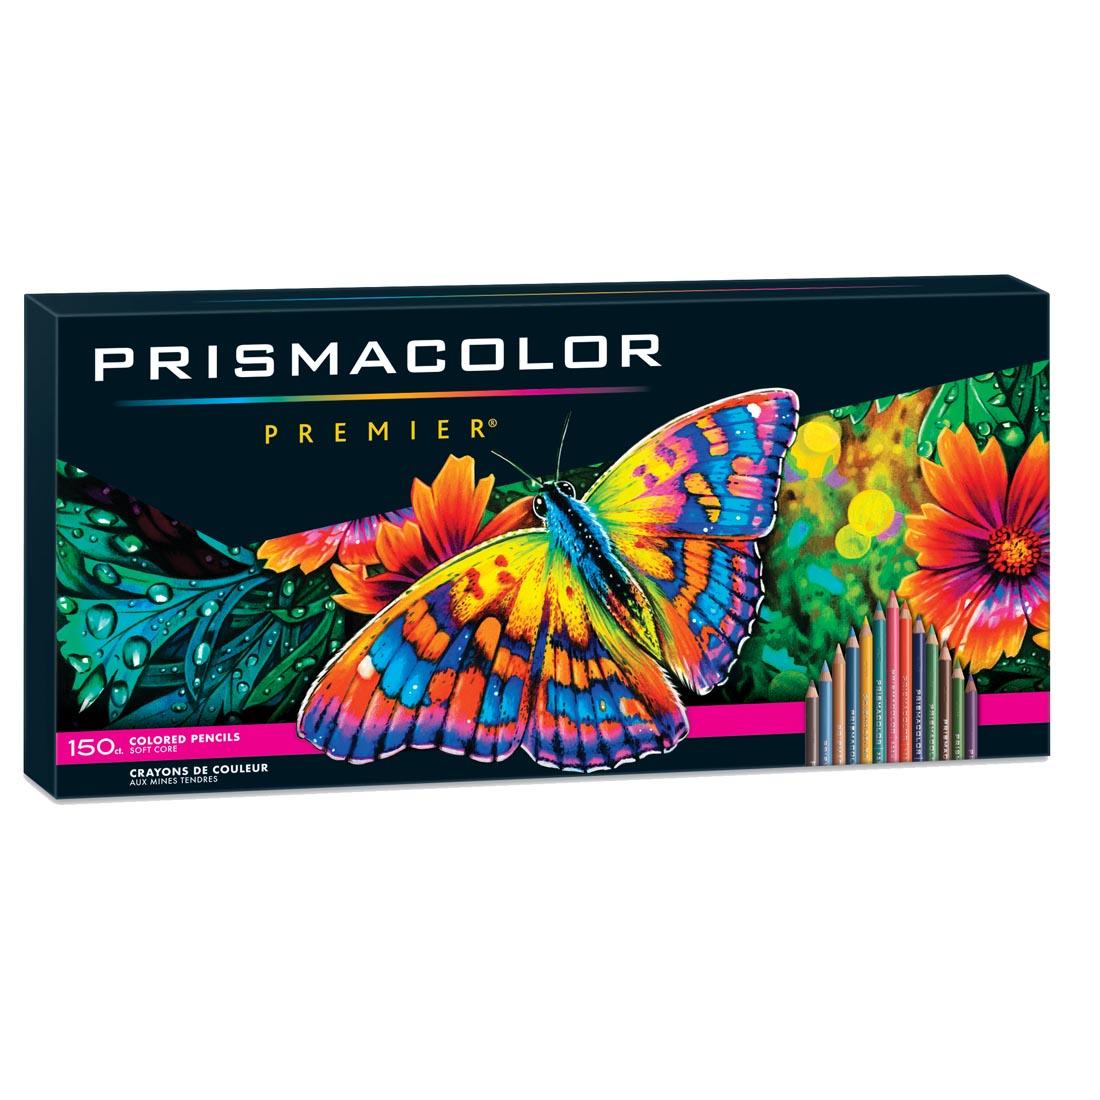 Prismacolor Premier Colored Pencils 150-Color Set